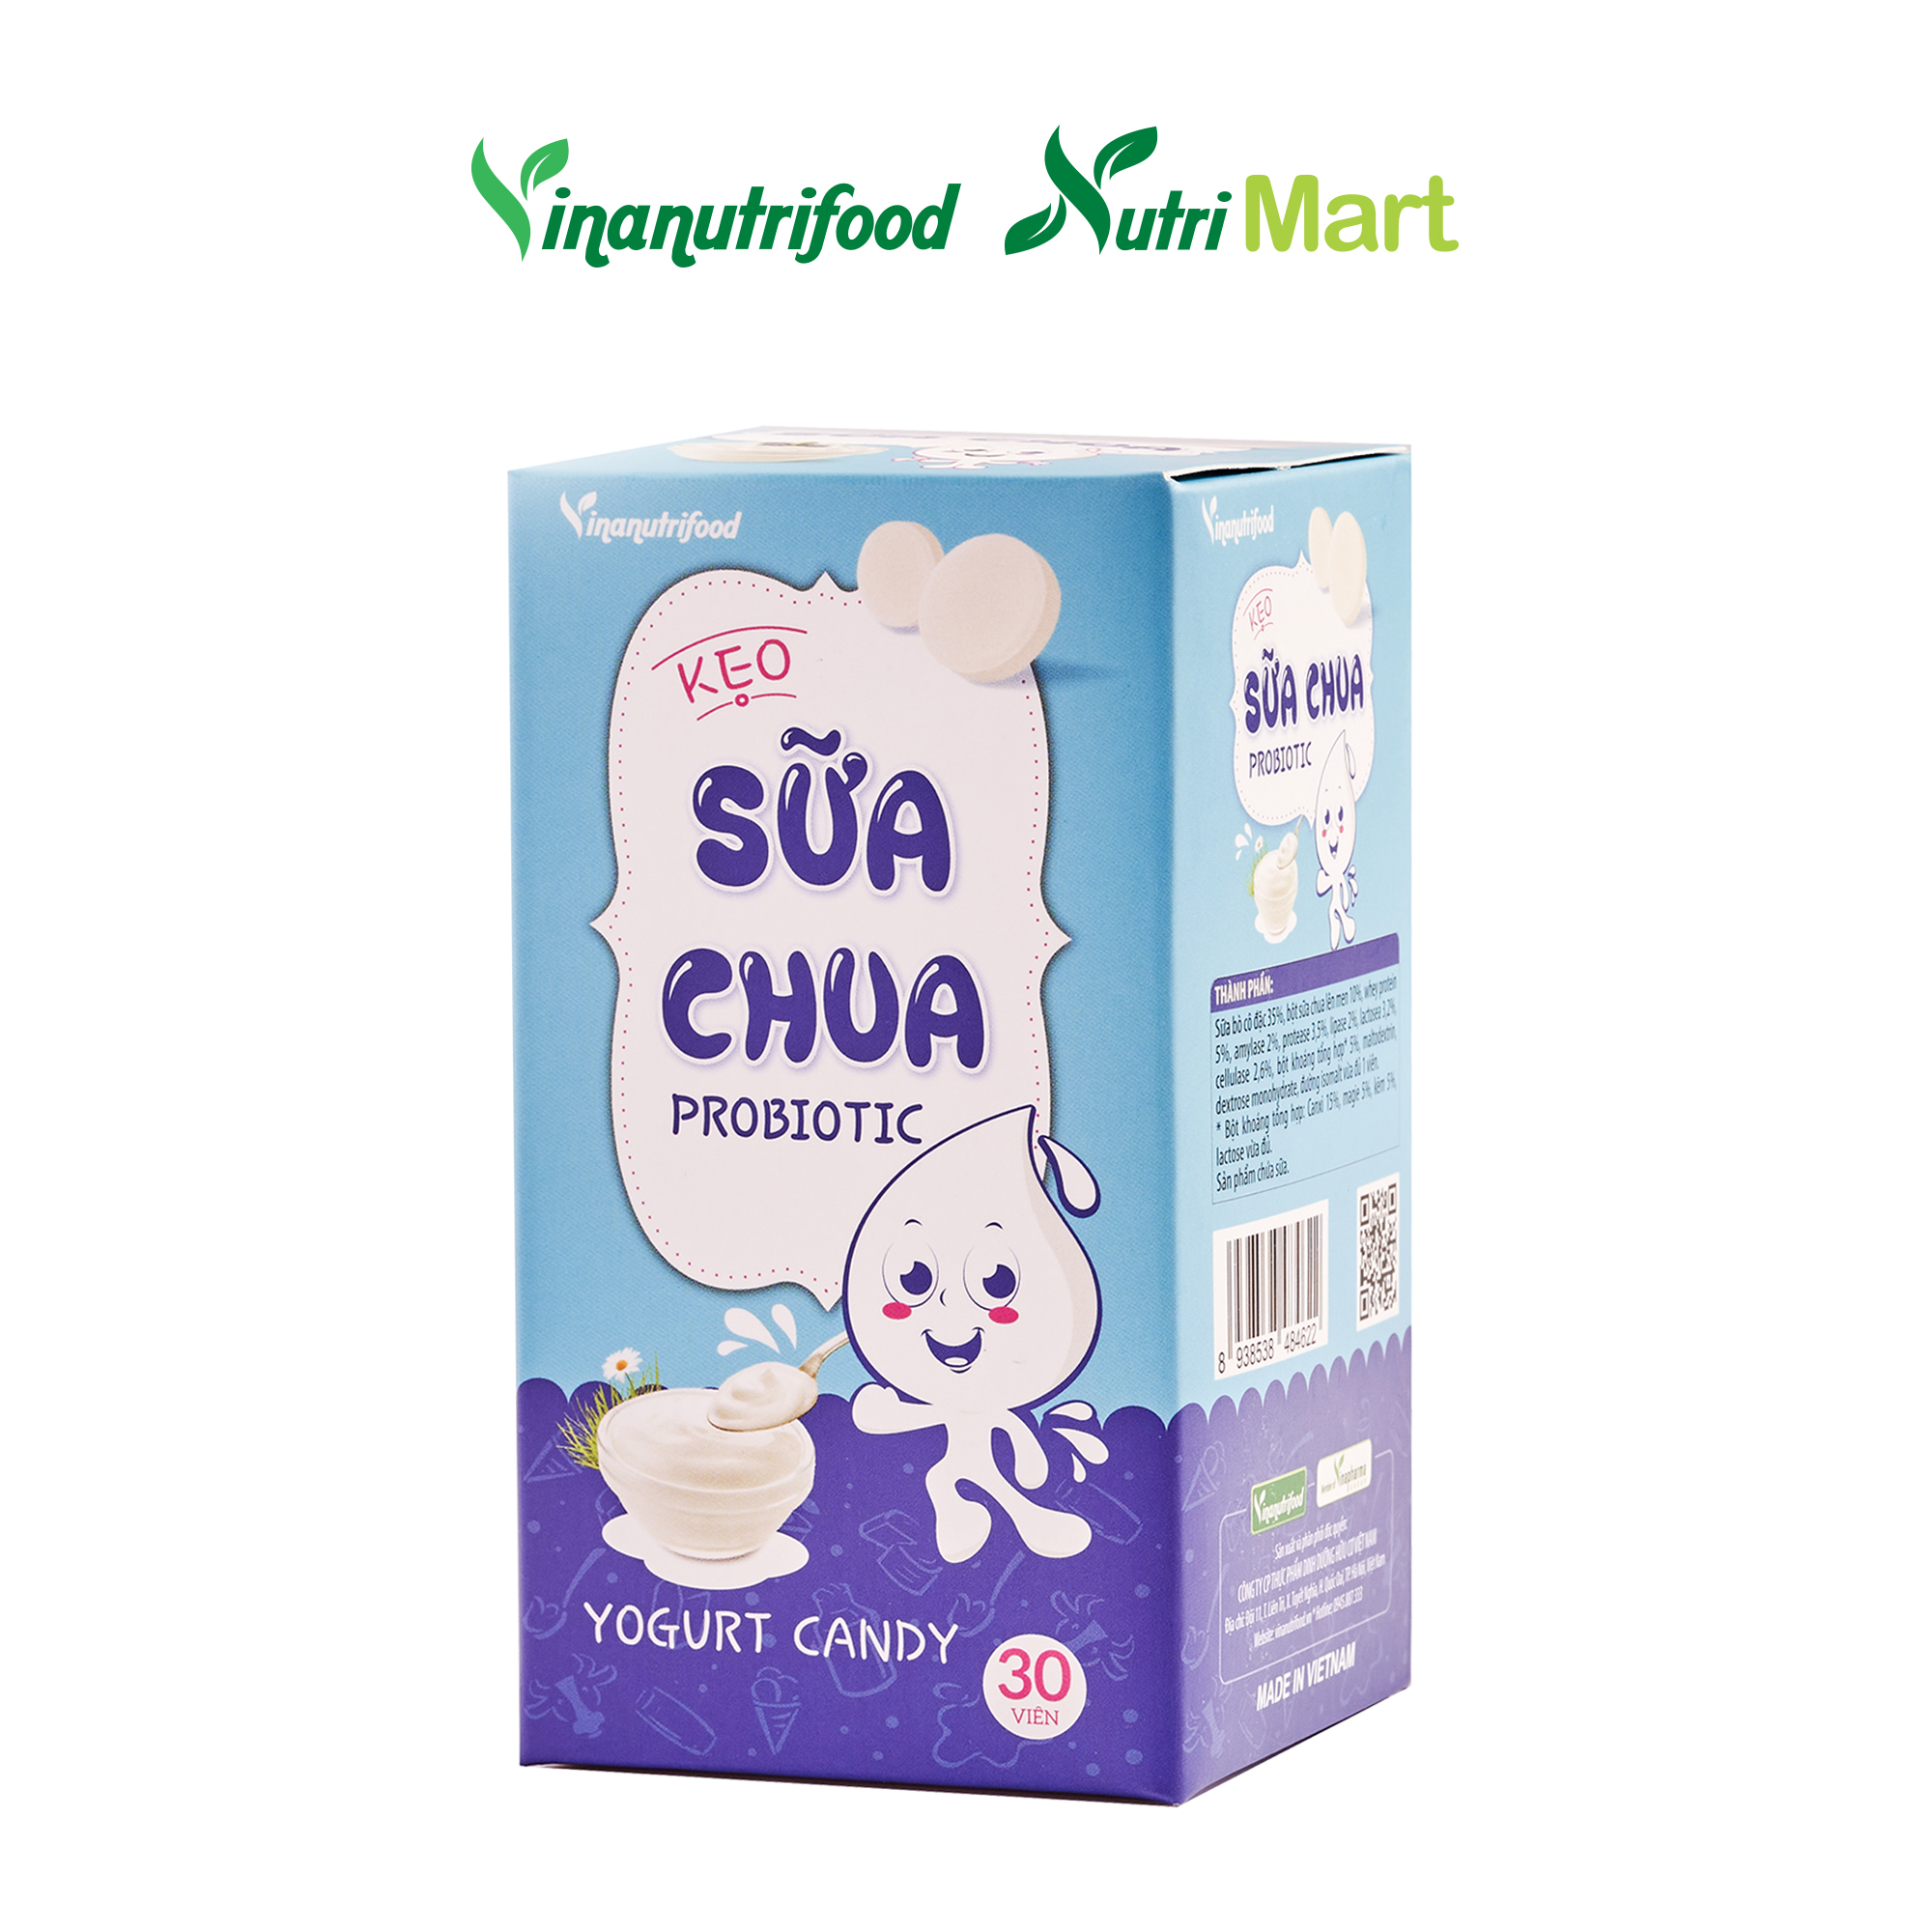 Kẹo sữa chua Probiotic chứa thành phần sữa chua lên men, bổ sung enzym lợi khuẩn tốt cho sức khỏe